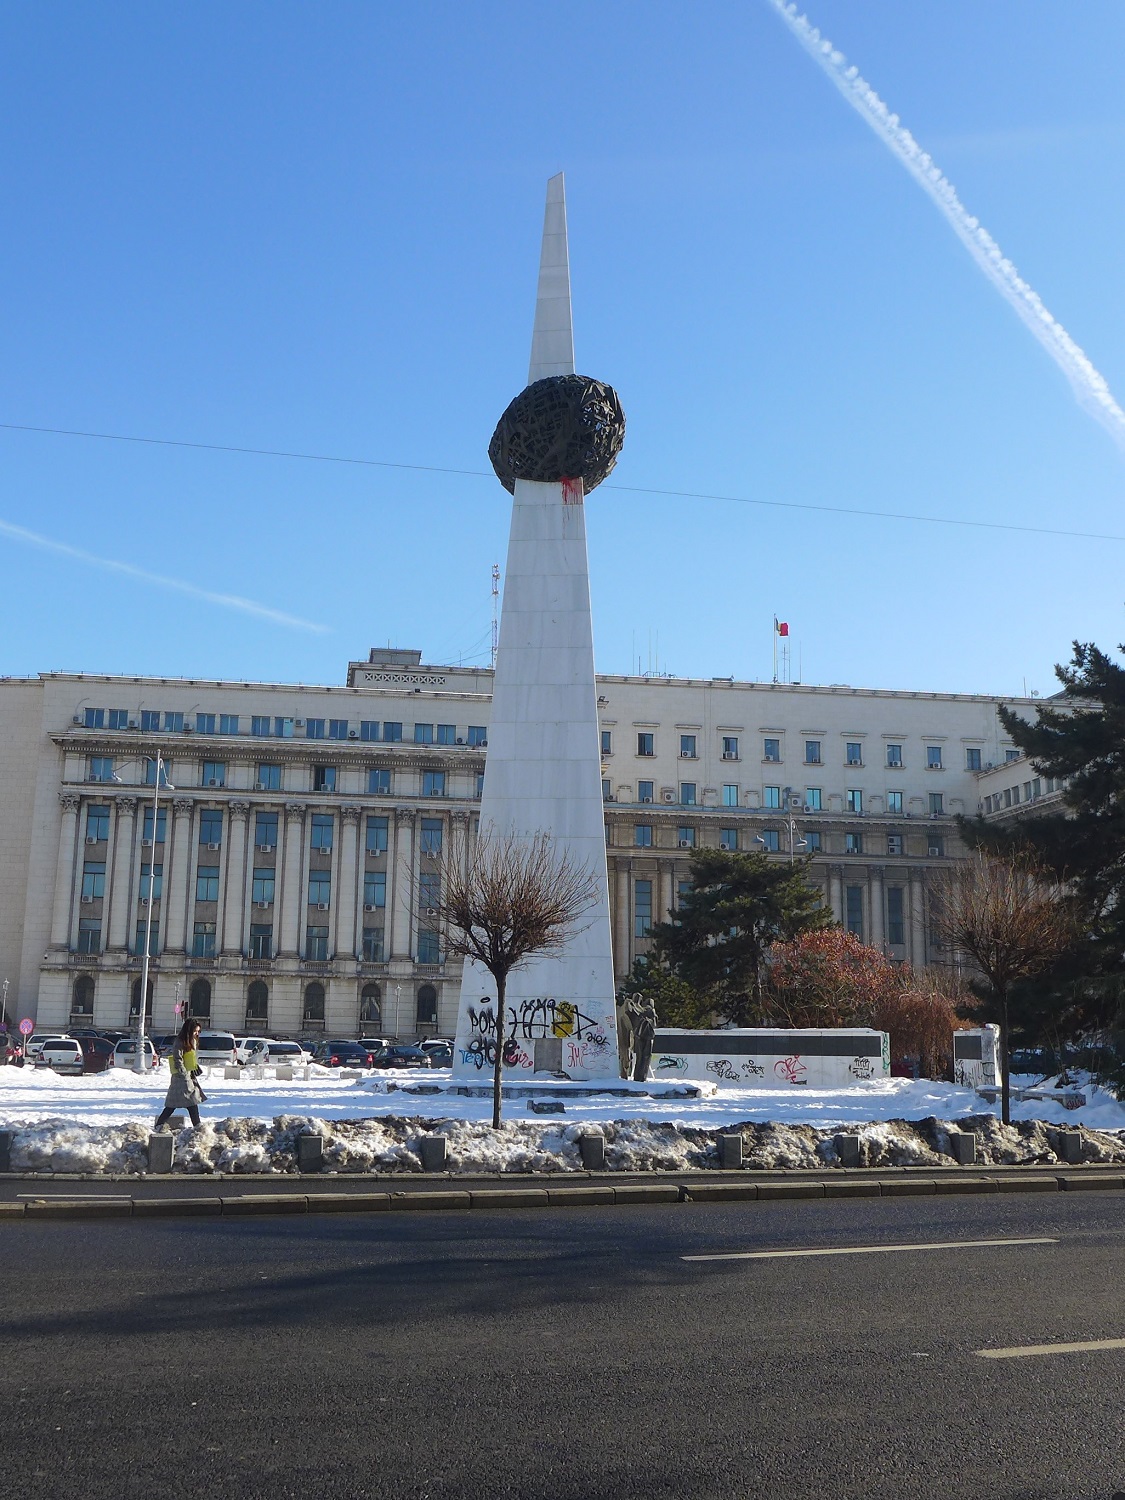 Place de la révolution, le « mémorial de la Renaissance » rend hommage aux Roumains morts pendant la révolution. Il symbolise le communisme transpercé par la contestation.